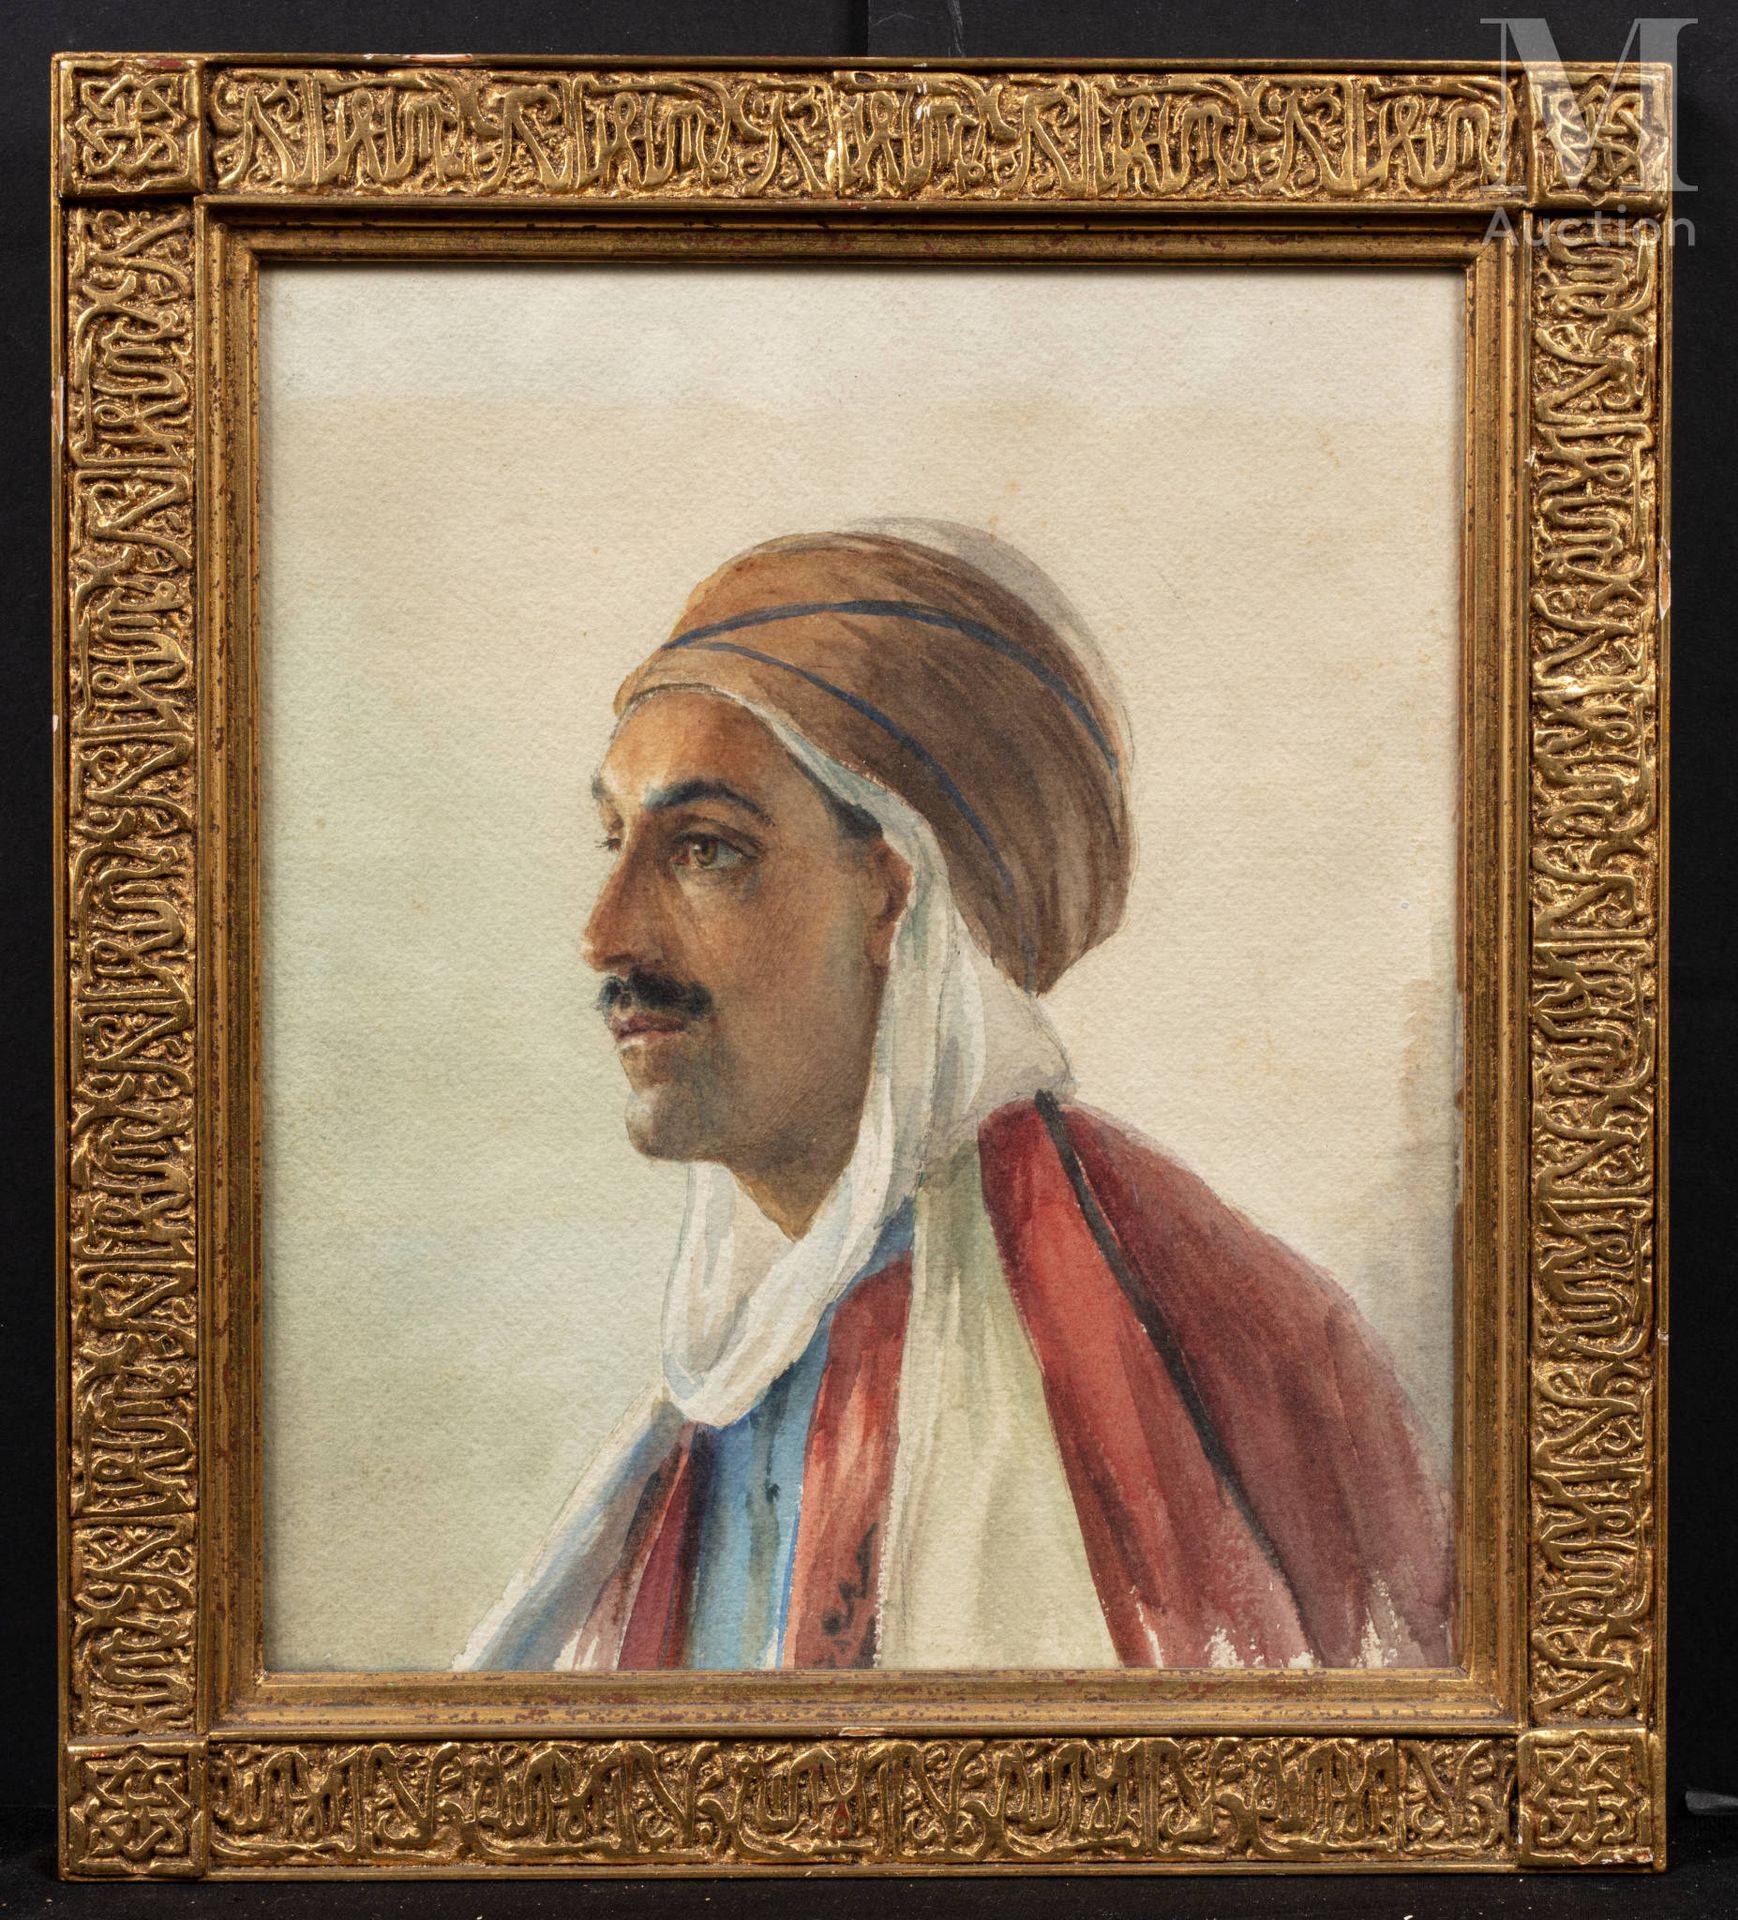 D'ANGLADE (1854 -1919) Porträt eines Mannes mit Turban

Aquarell

32 x 27 cm 

N&hellip;